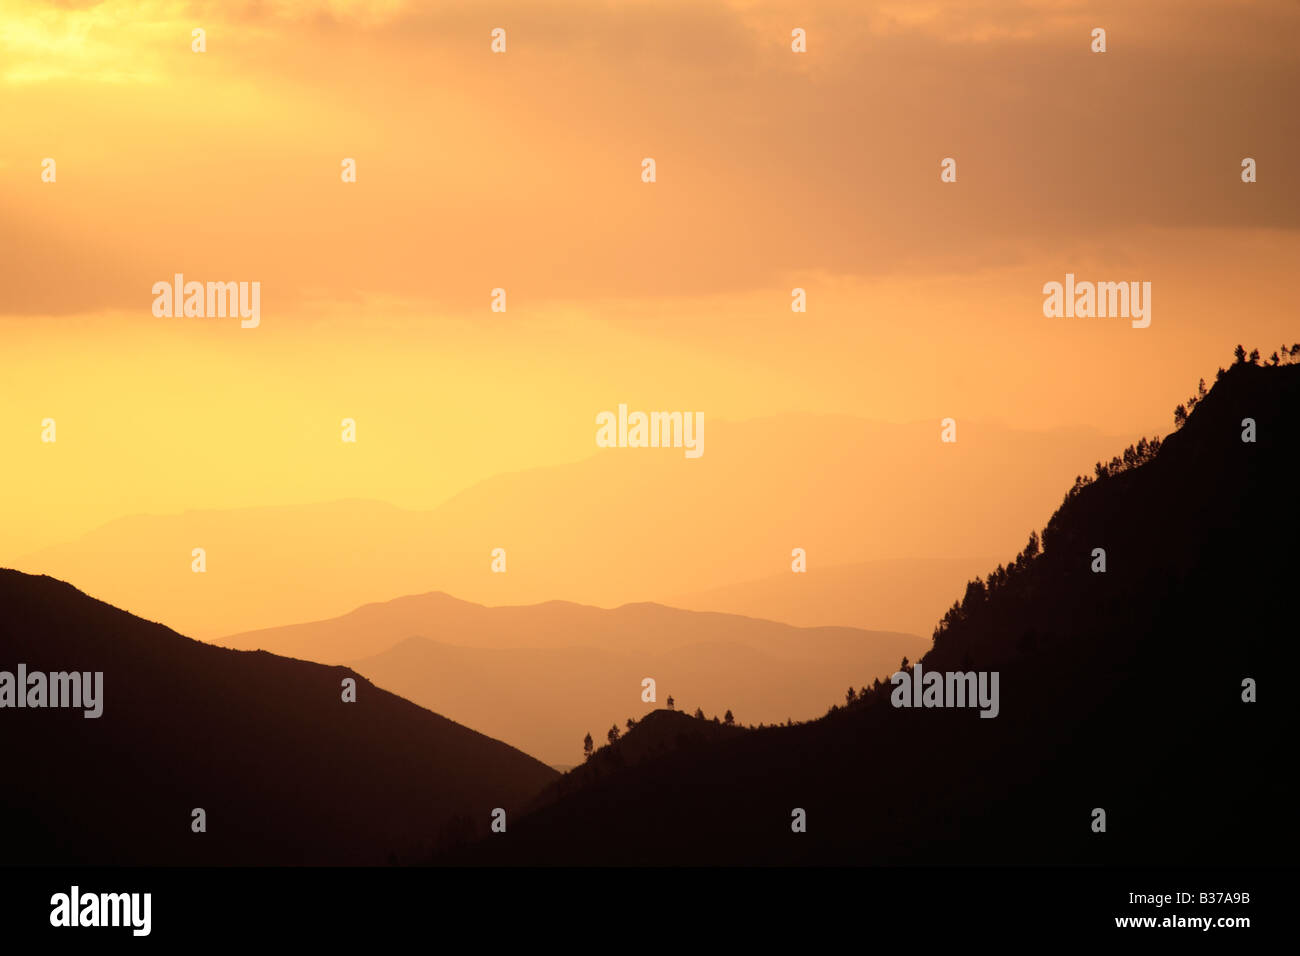 Sunset over mountain Stock Photo